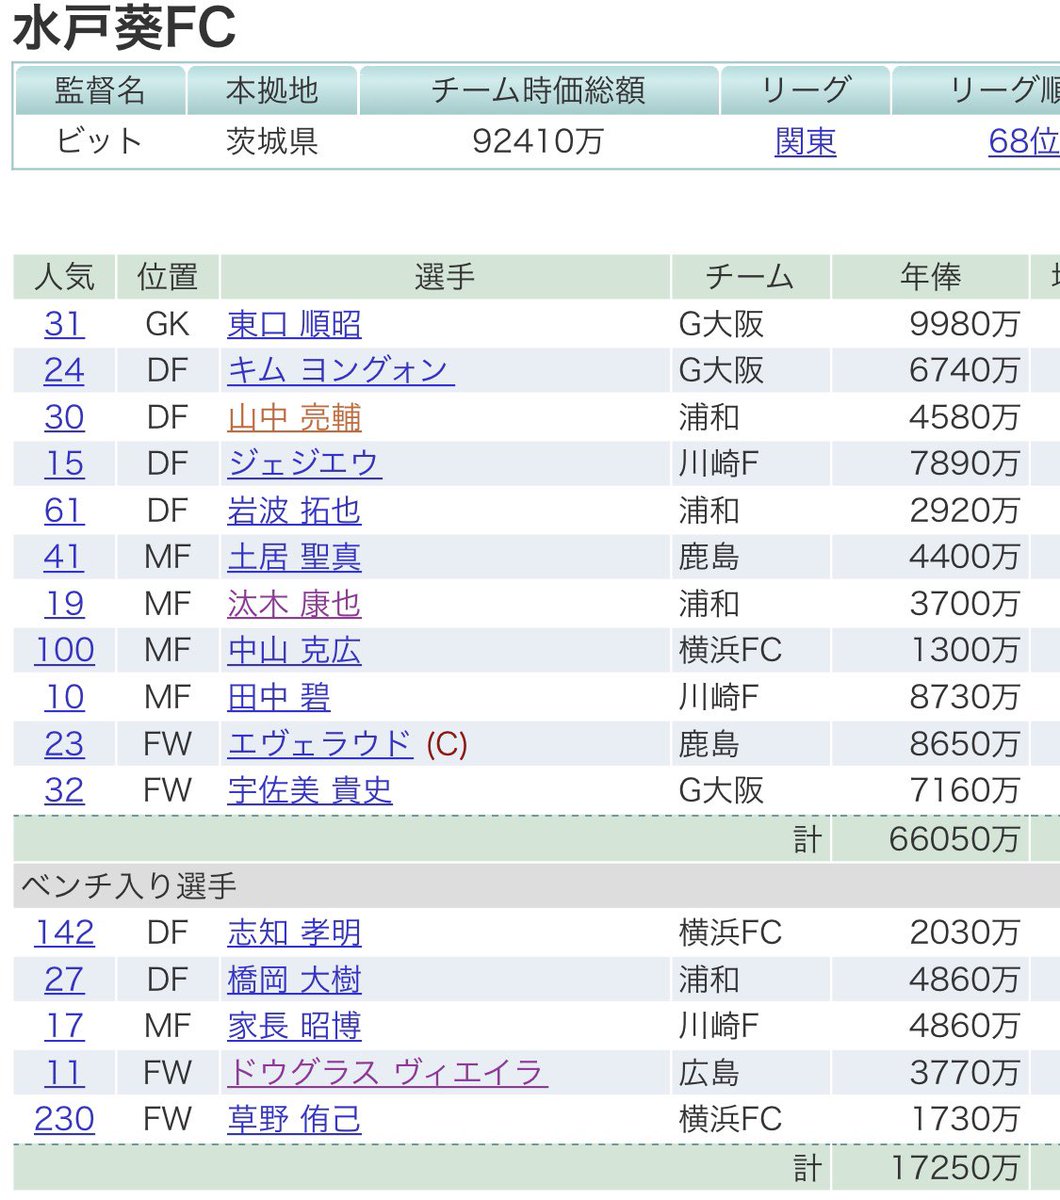 ビット ファンサカ第25節結果 1st 2nd共に平均ど真ん中 1stはトップ残留 2ndは東日本昇格が目標だったものの おそらくどちらも失敗